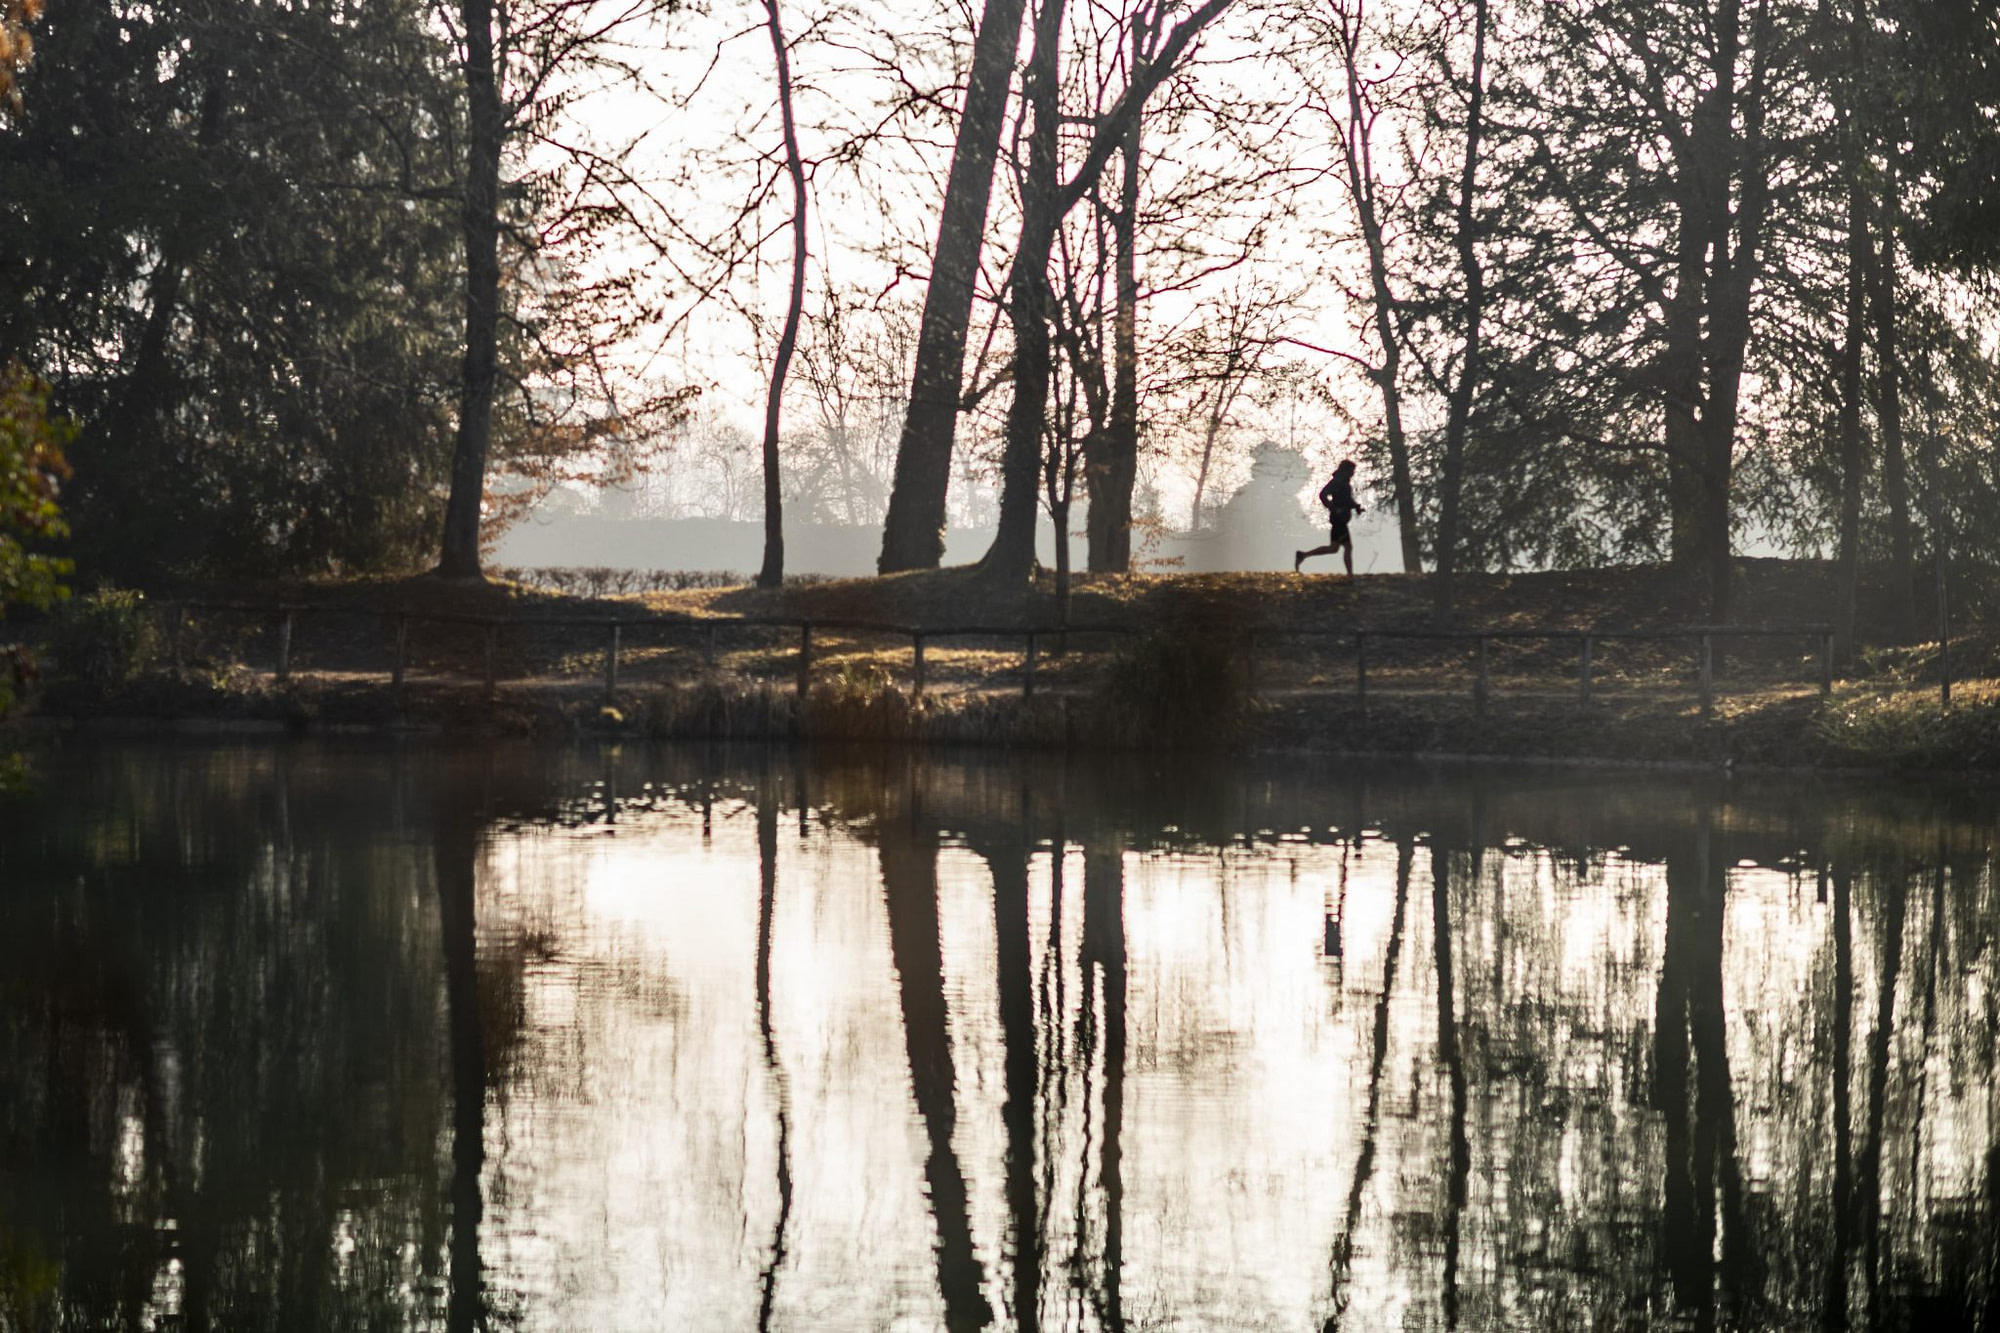 il corridore famoso mentre fa il suo allenamento quotidiano nel parco con il fiume